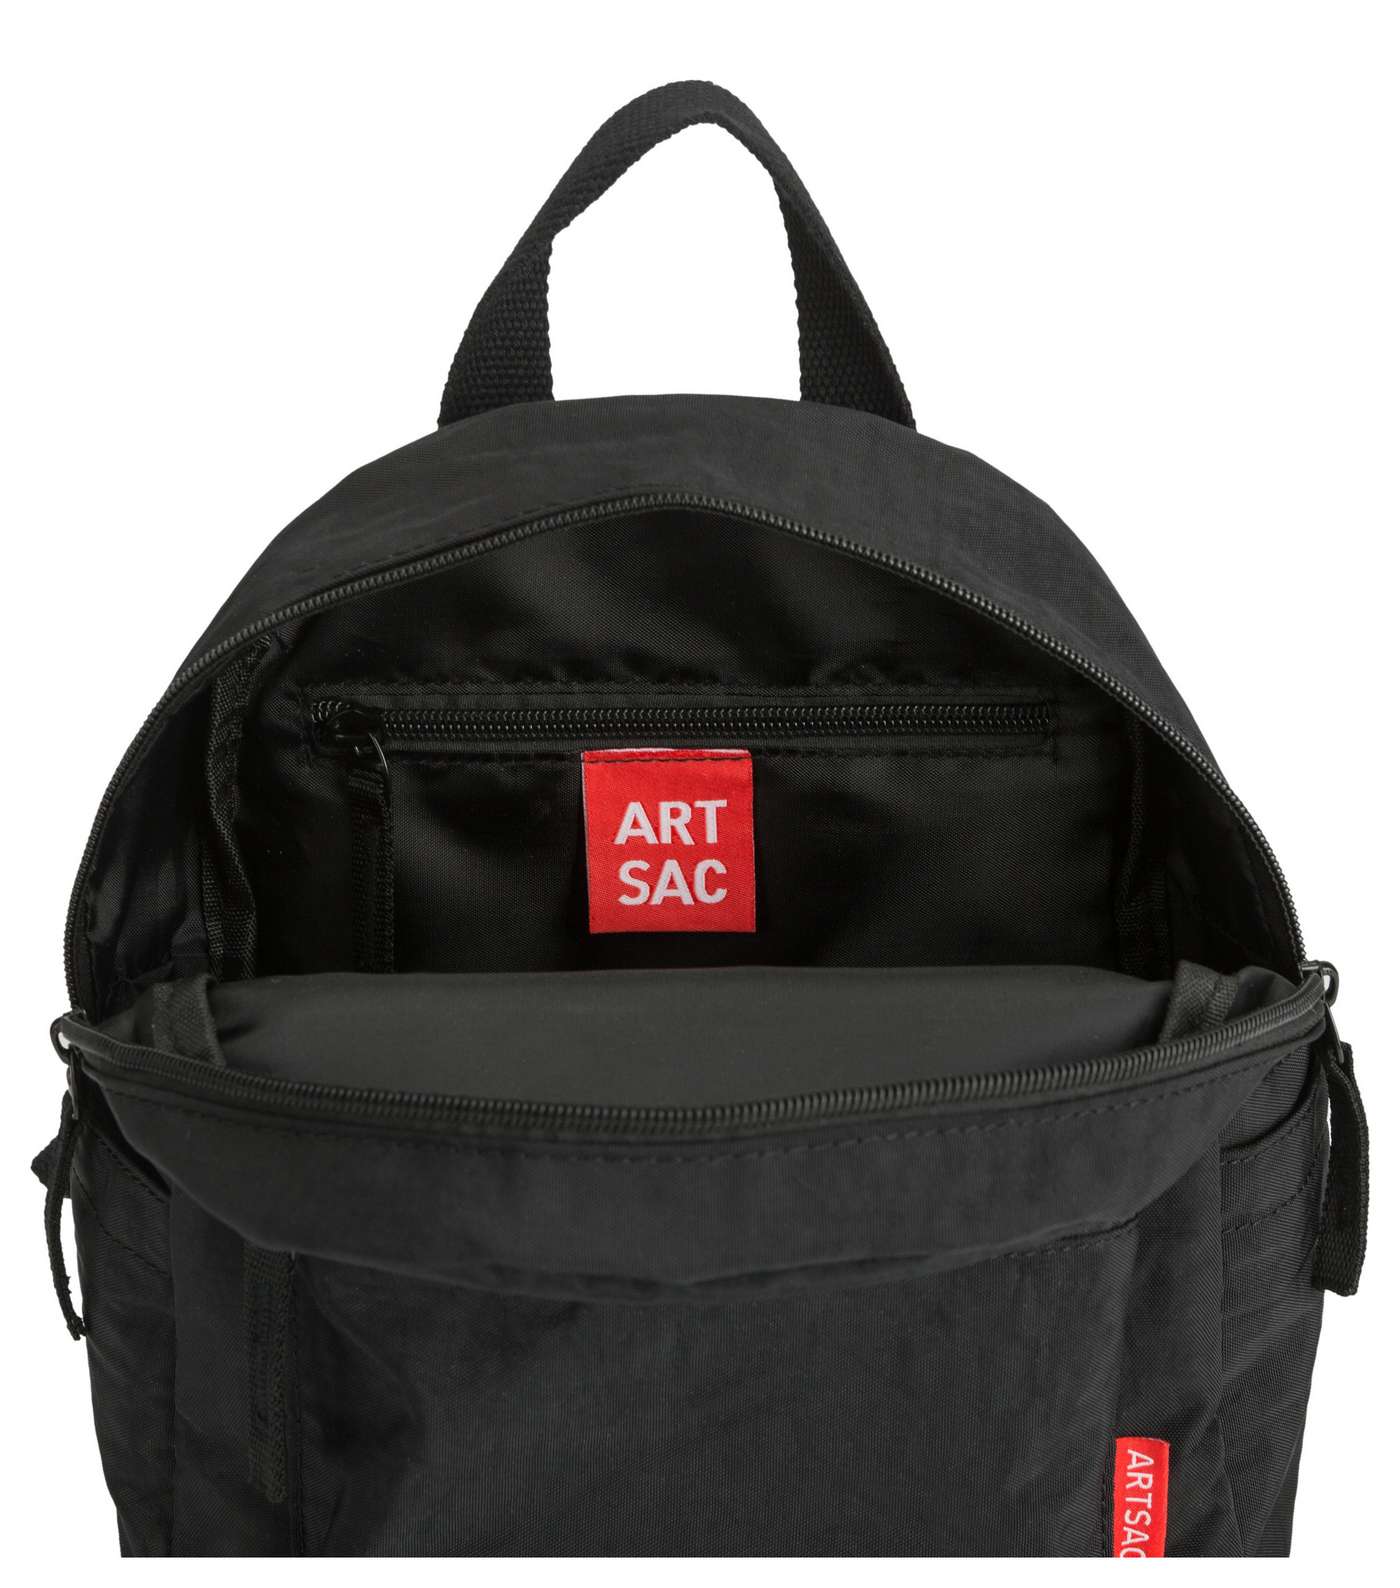 Artsac Black Pocket Front Backpack Image 4